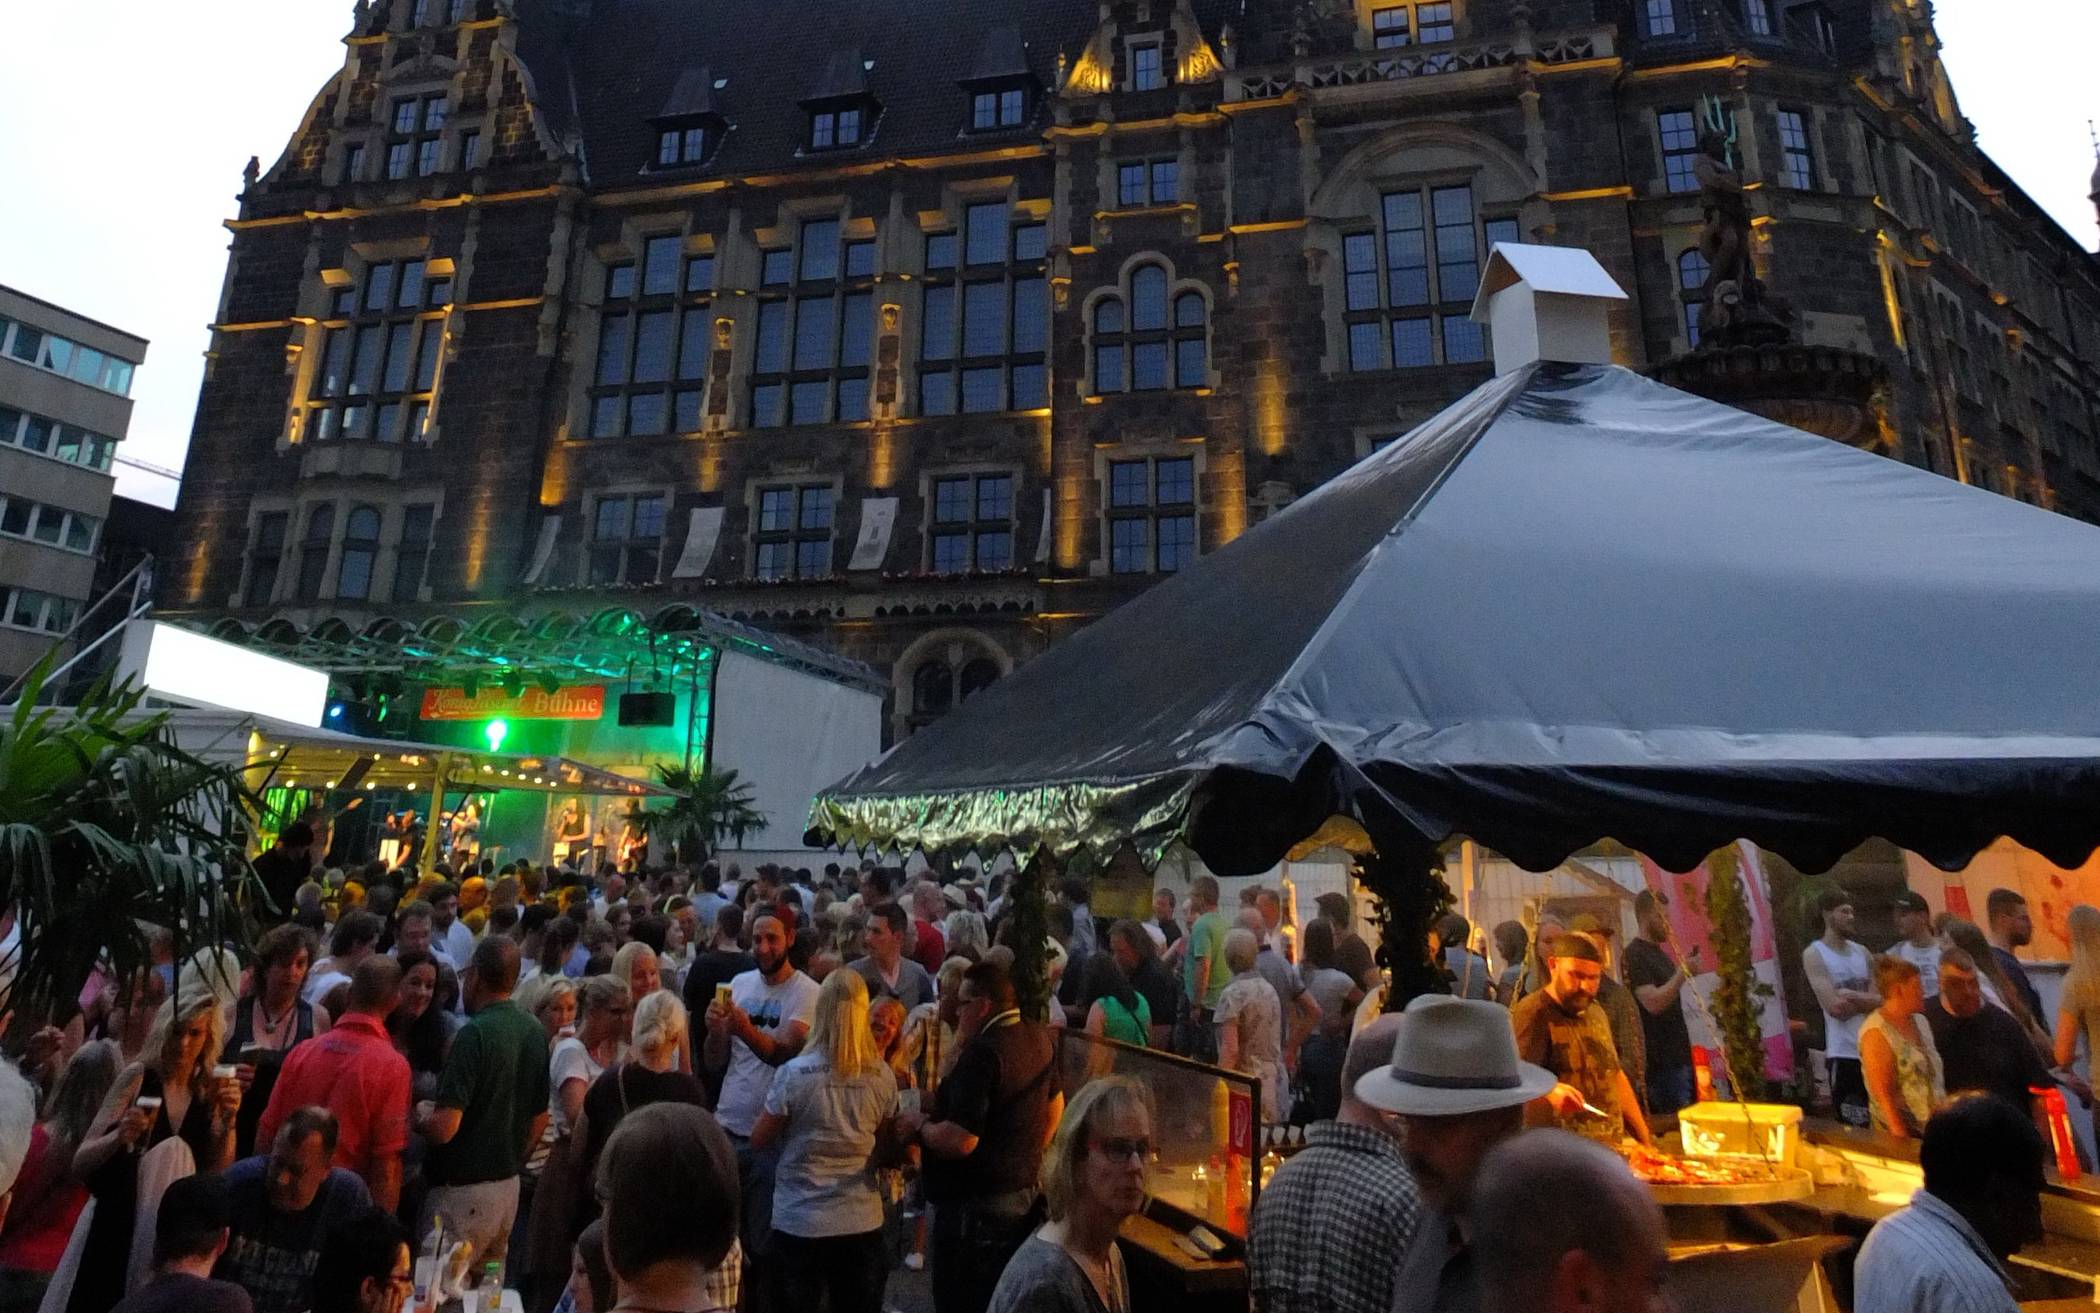  Ob unter Palmen am Neumarkt oder auf der Bühne am Von-der-Heydt-Platz – von Freitag bis Sonntag feiert die Elberfelder City. 